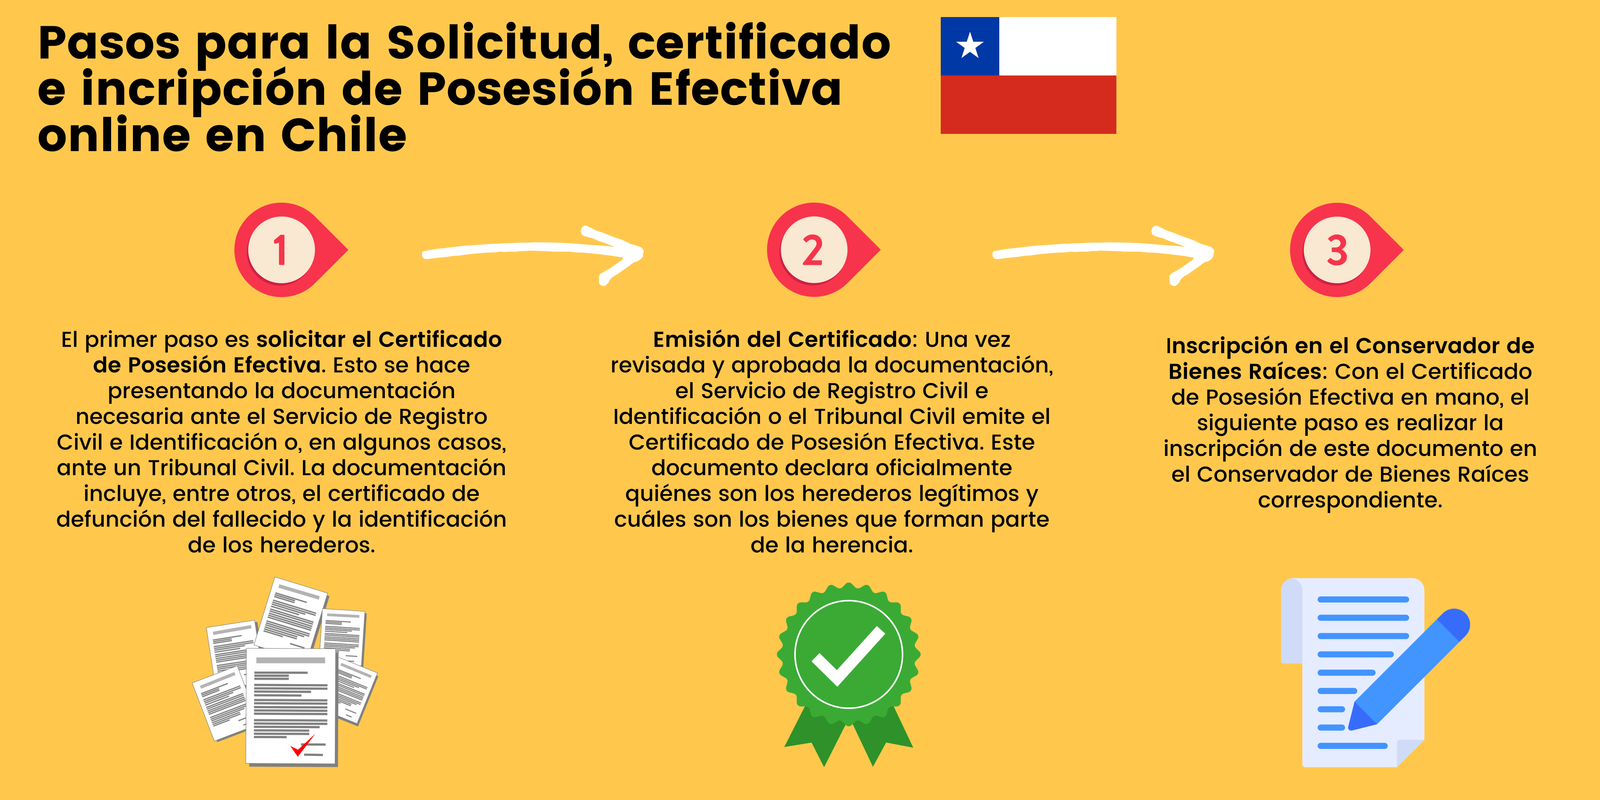 Pasos para la Solicitud, certificado e incripción de Posesión Efectiva online en Chile